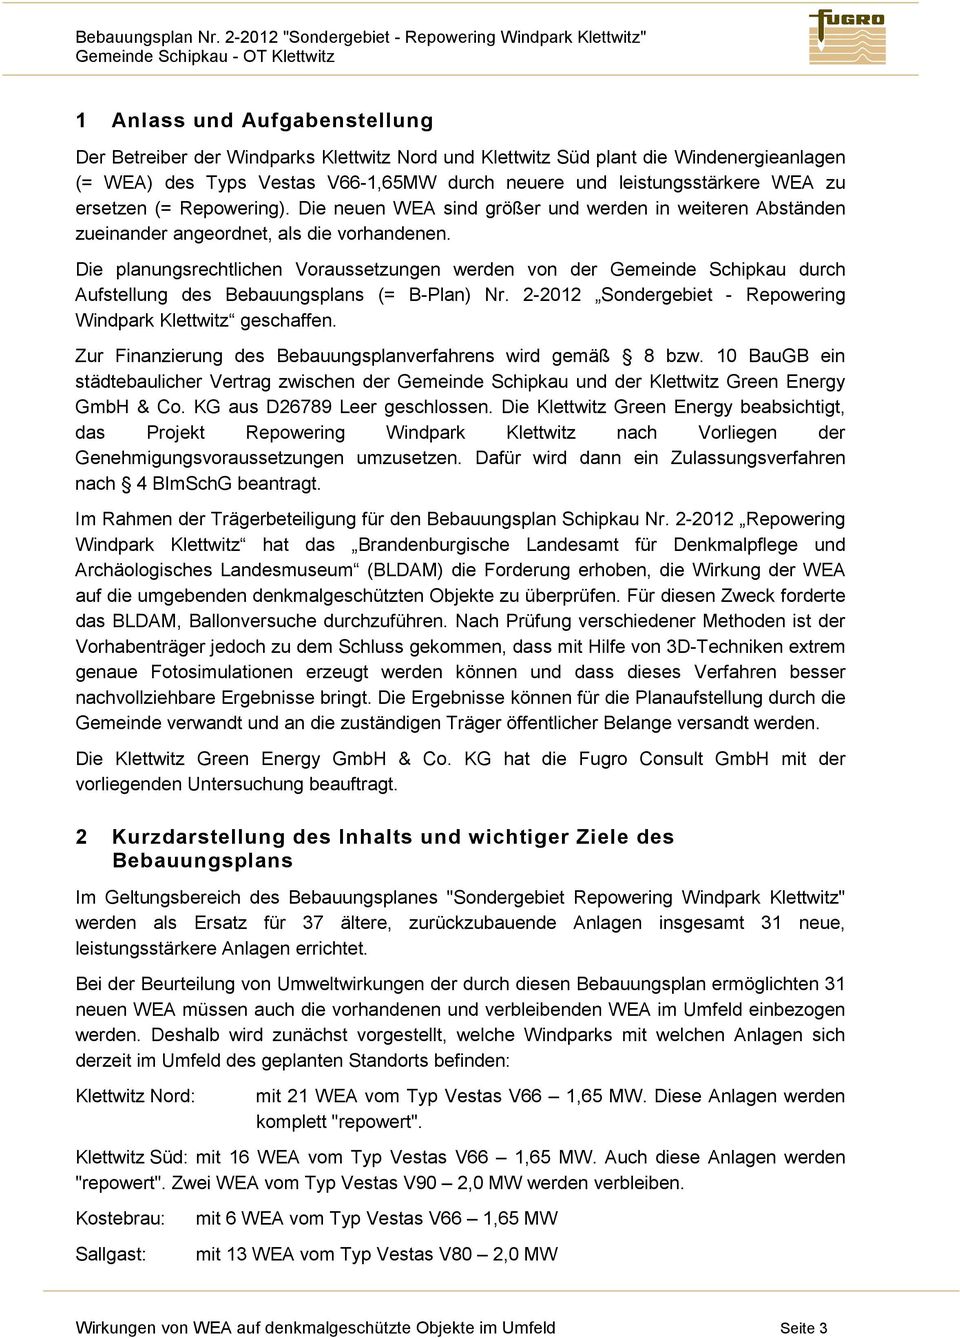 Die planungsrechtlichen Voraussetzungen werden von der Gemeinde Schipkau durch Aufstellung des Bebauungsplans (= B-Plan) Nr. 2-2012 Sondergebiet - Repowering Windpark Klettwitz geschaffen.